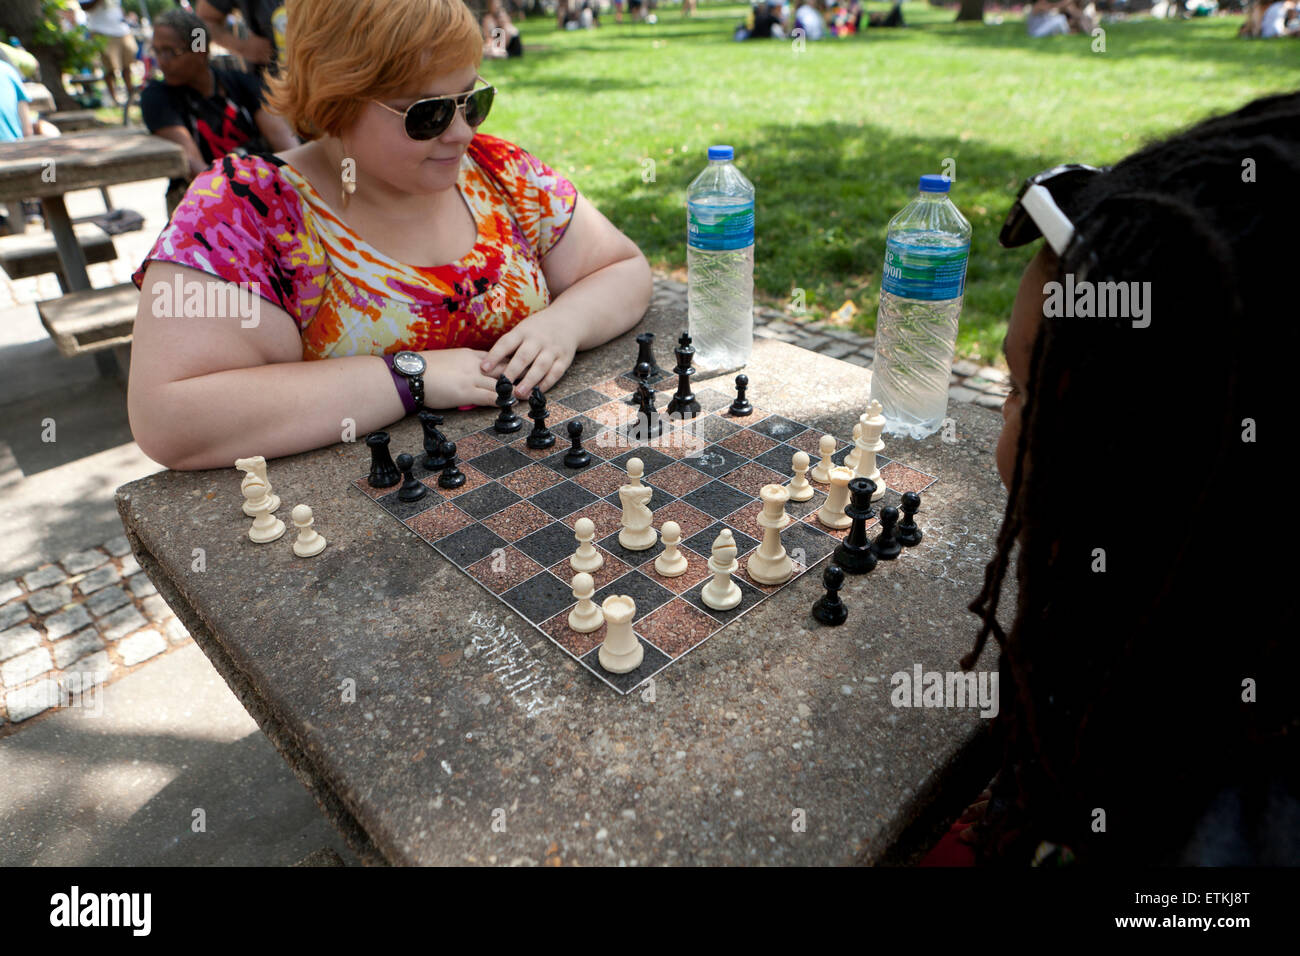 Les femmes jouant aux échecs dans un parc public - Tableau du DuPont Circle, Washington, DC USA Banque D'Images